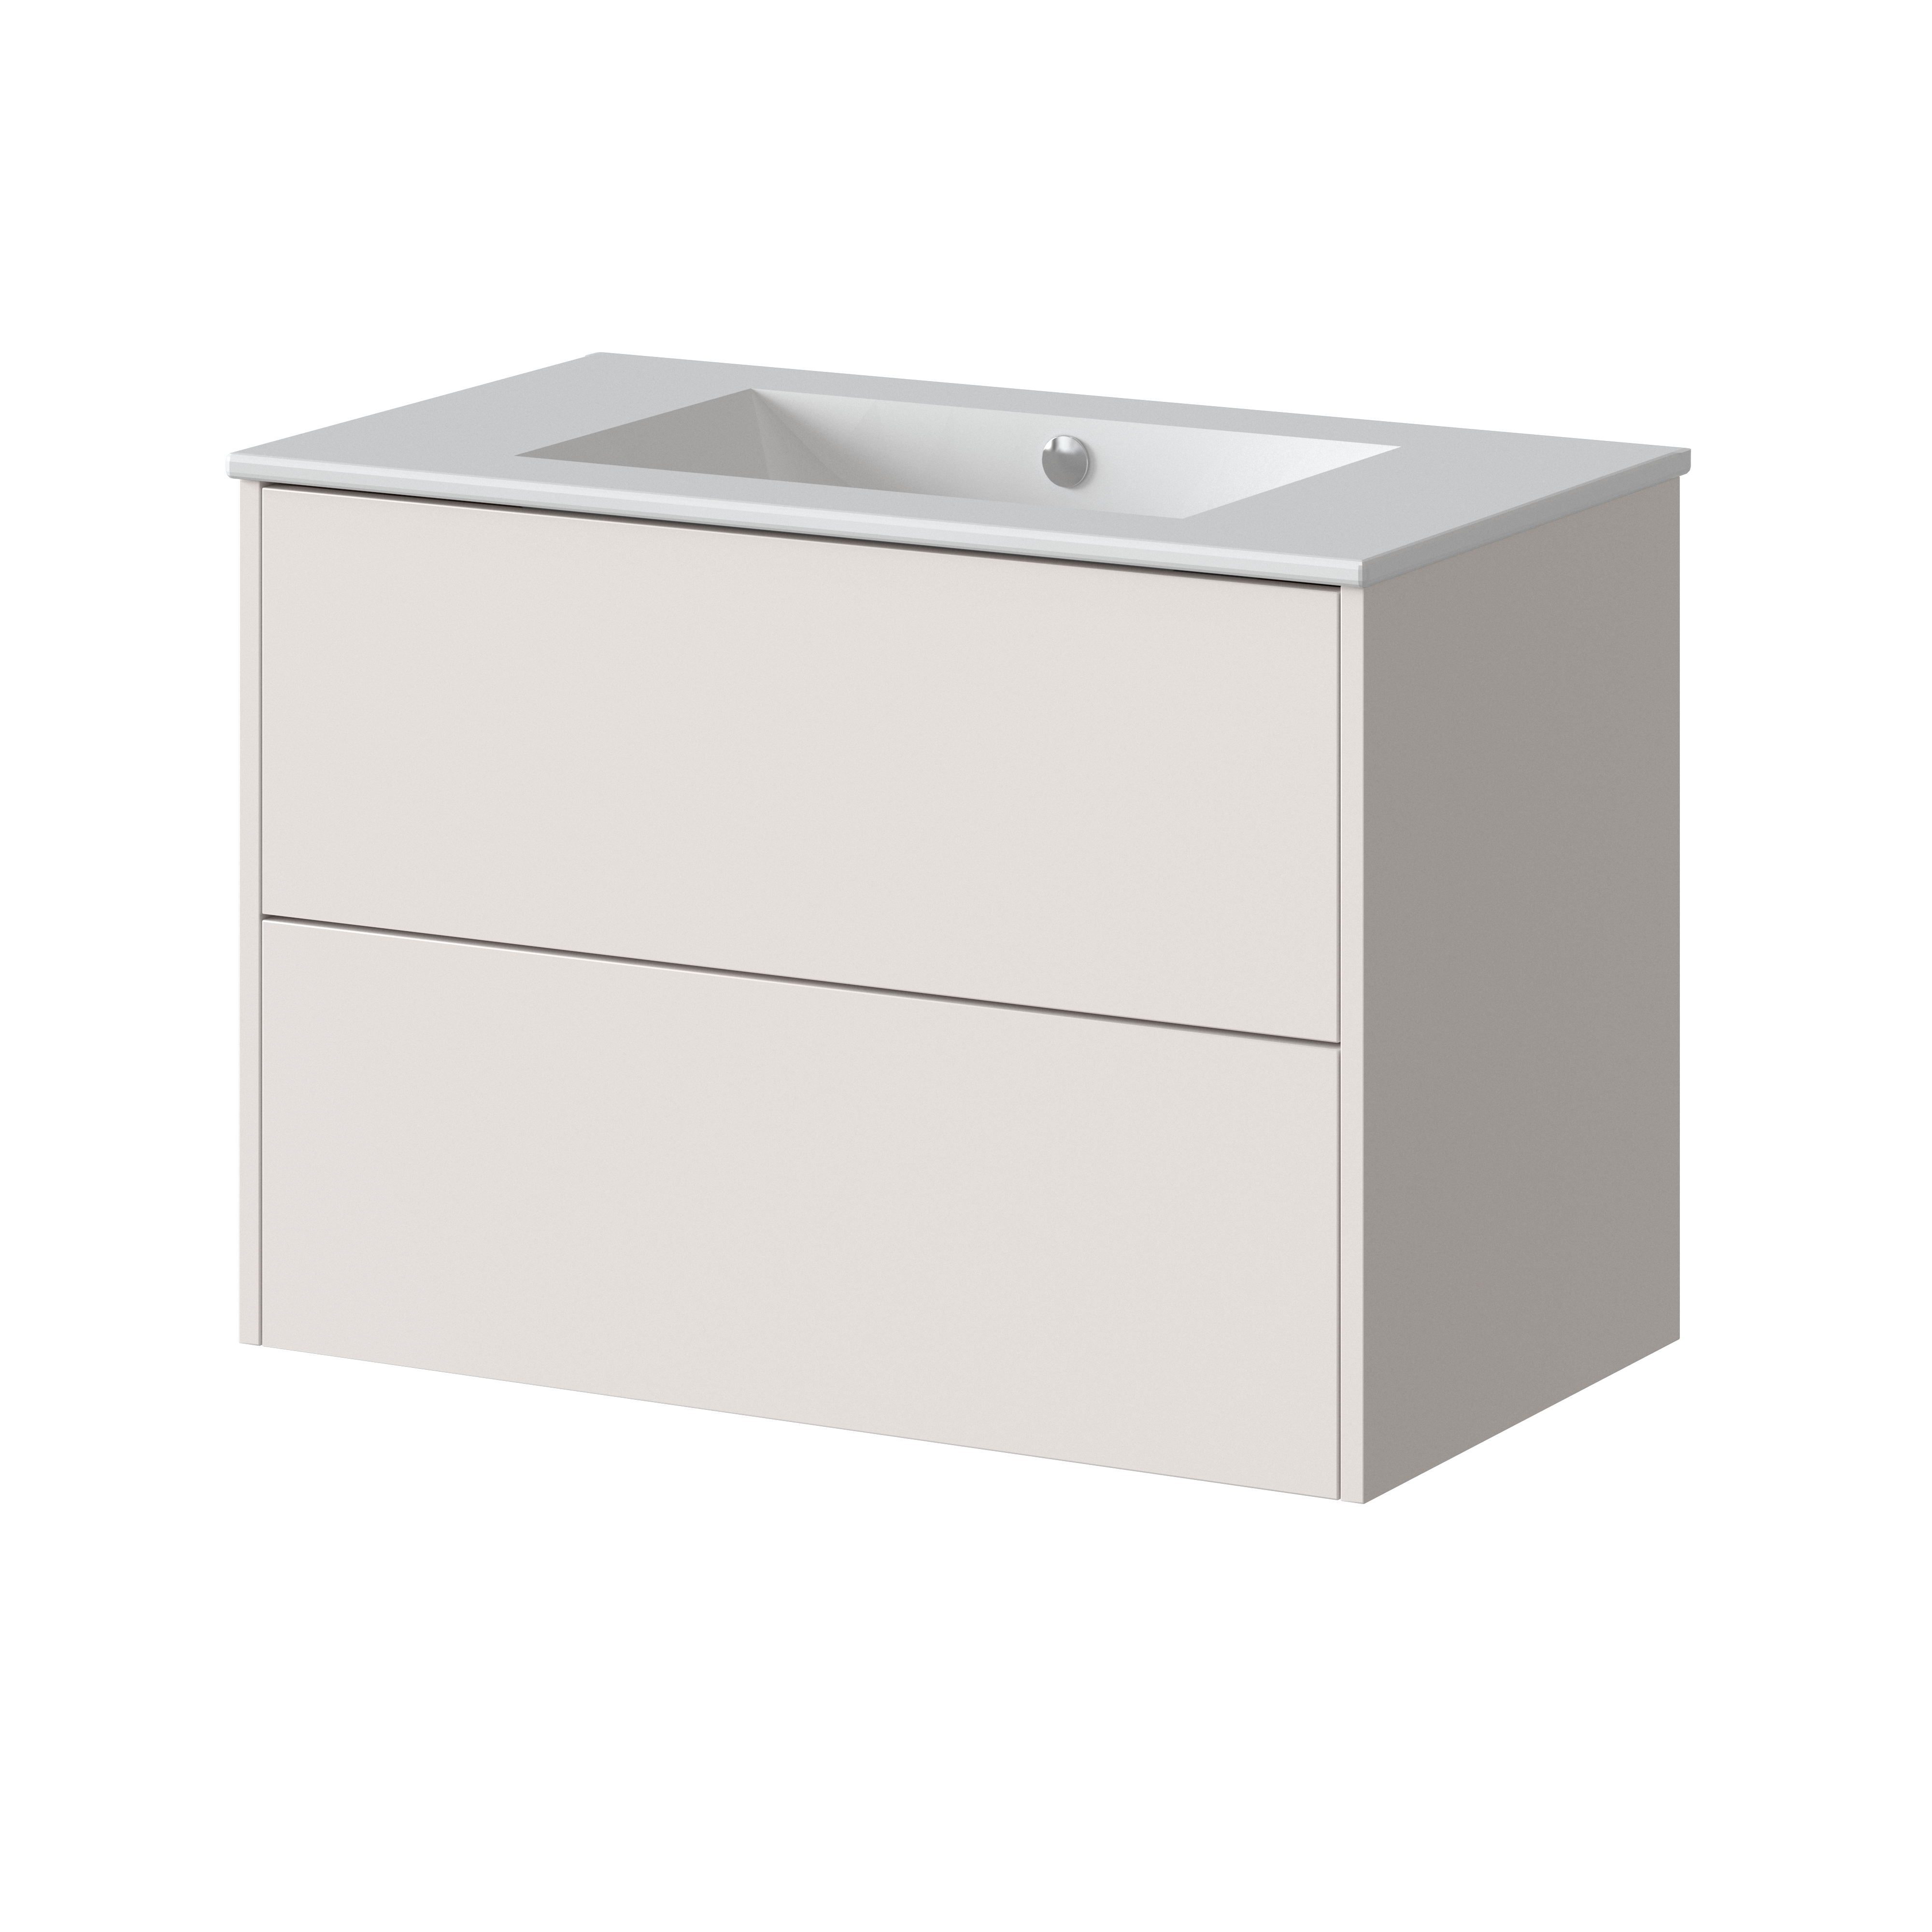 Mueble de baño dreams blanco roto 60x45 cm